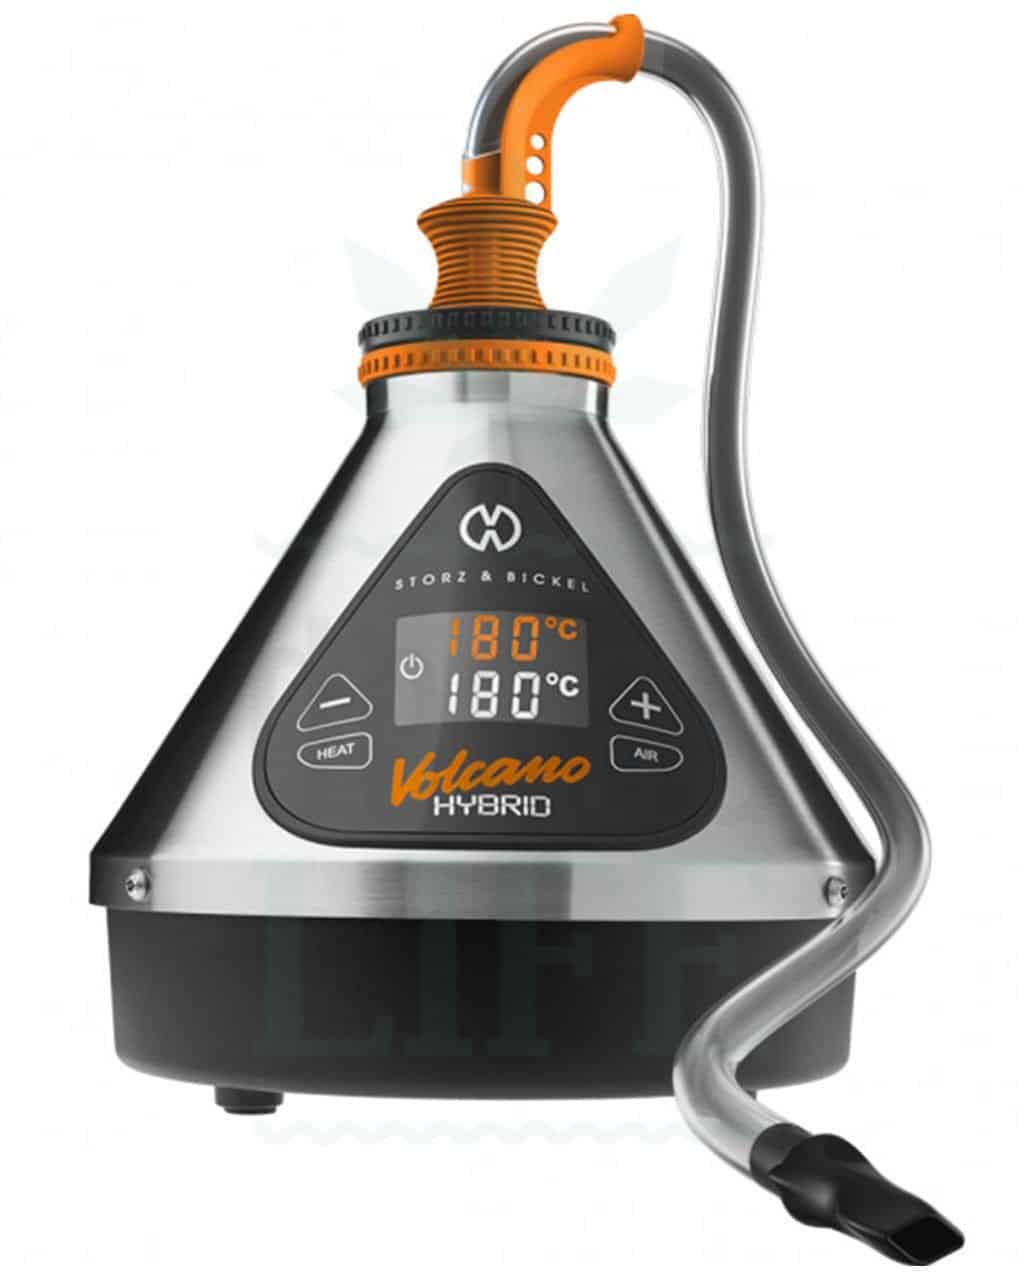 storZ &amp;BICKEL Volcano Hybrid Benchtop Vaporizer stationær vaporizer | digital